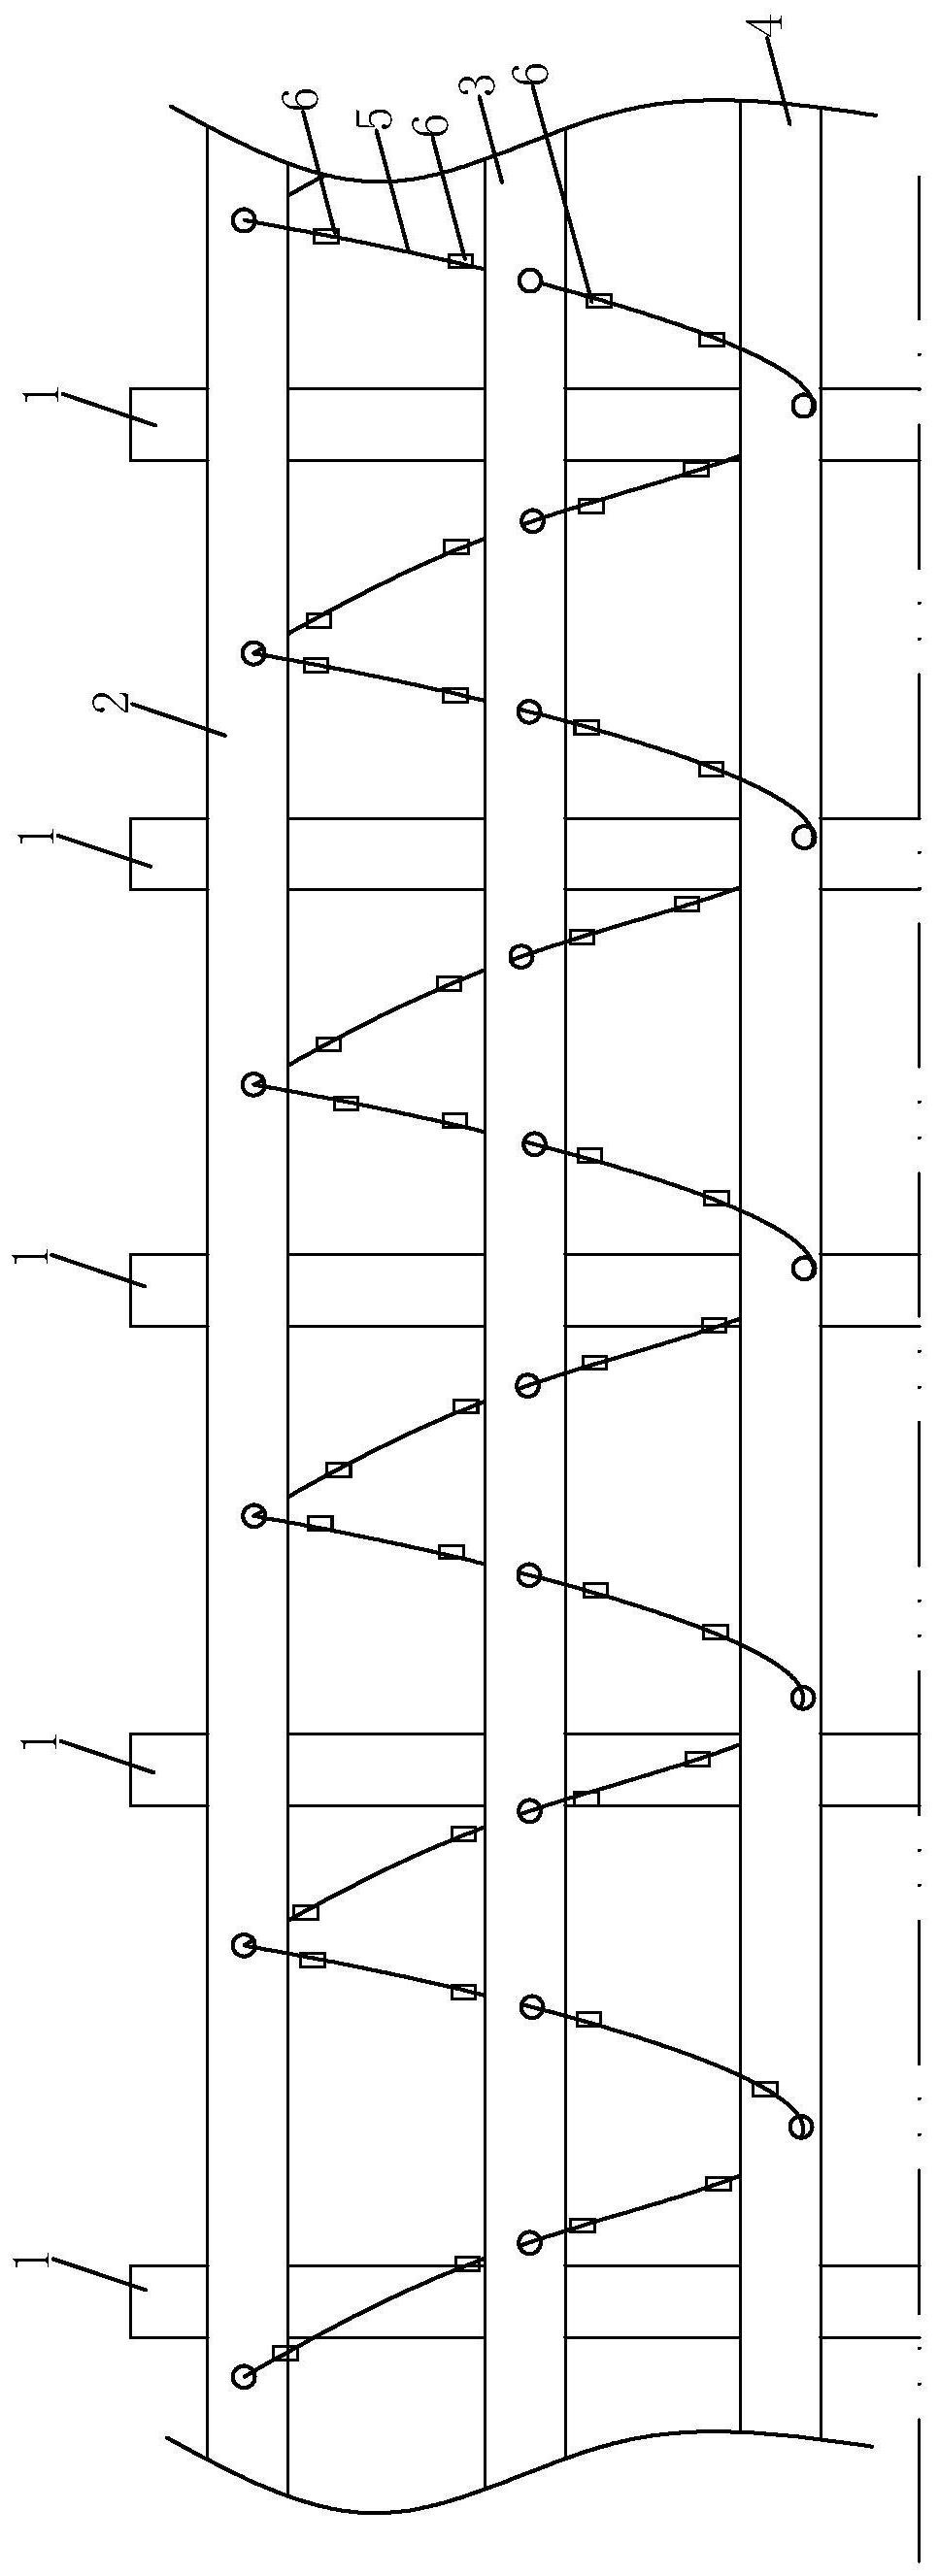 高速公路车辆防撞结构专利图